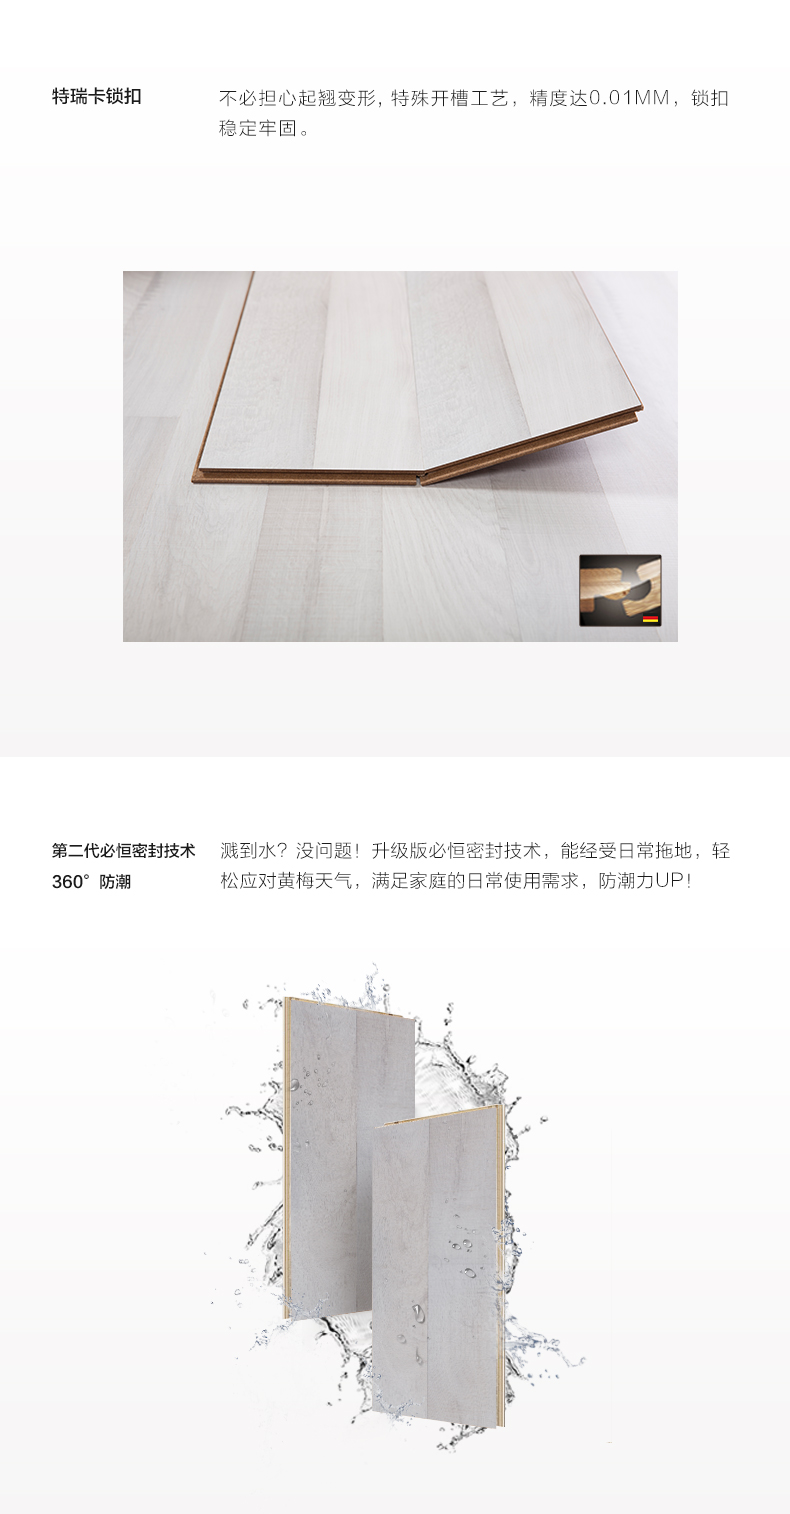 深圳菲林格尔专卖店 深圳菲林格尔木地板A-418图片